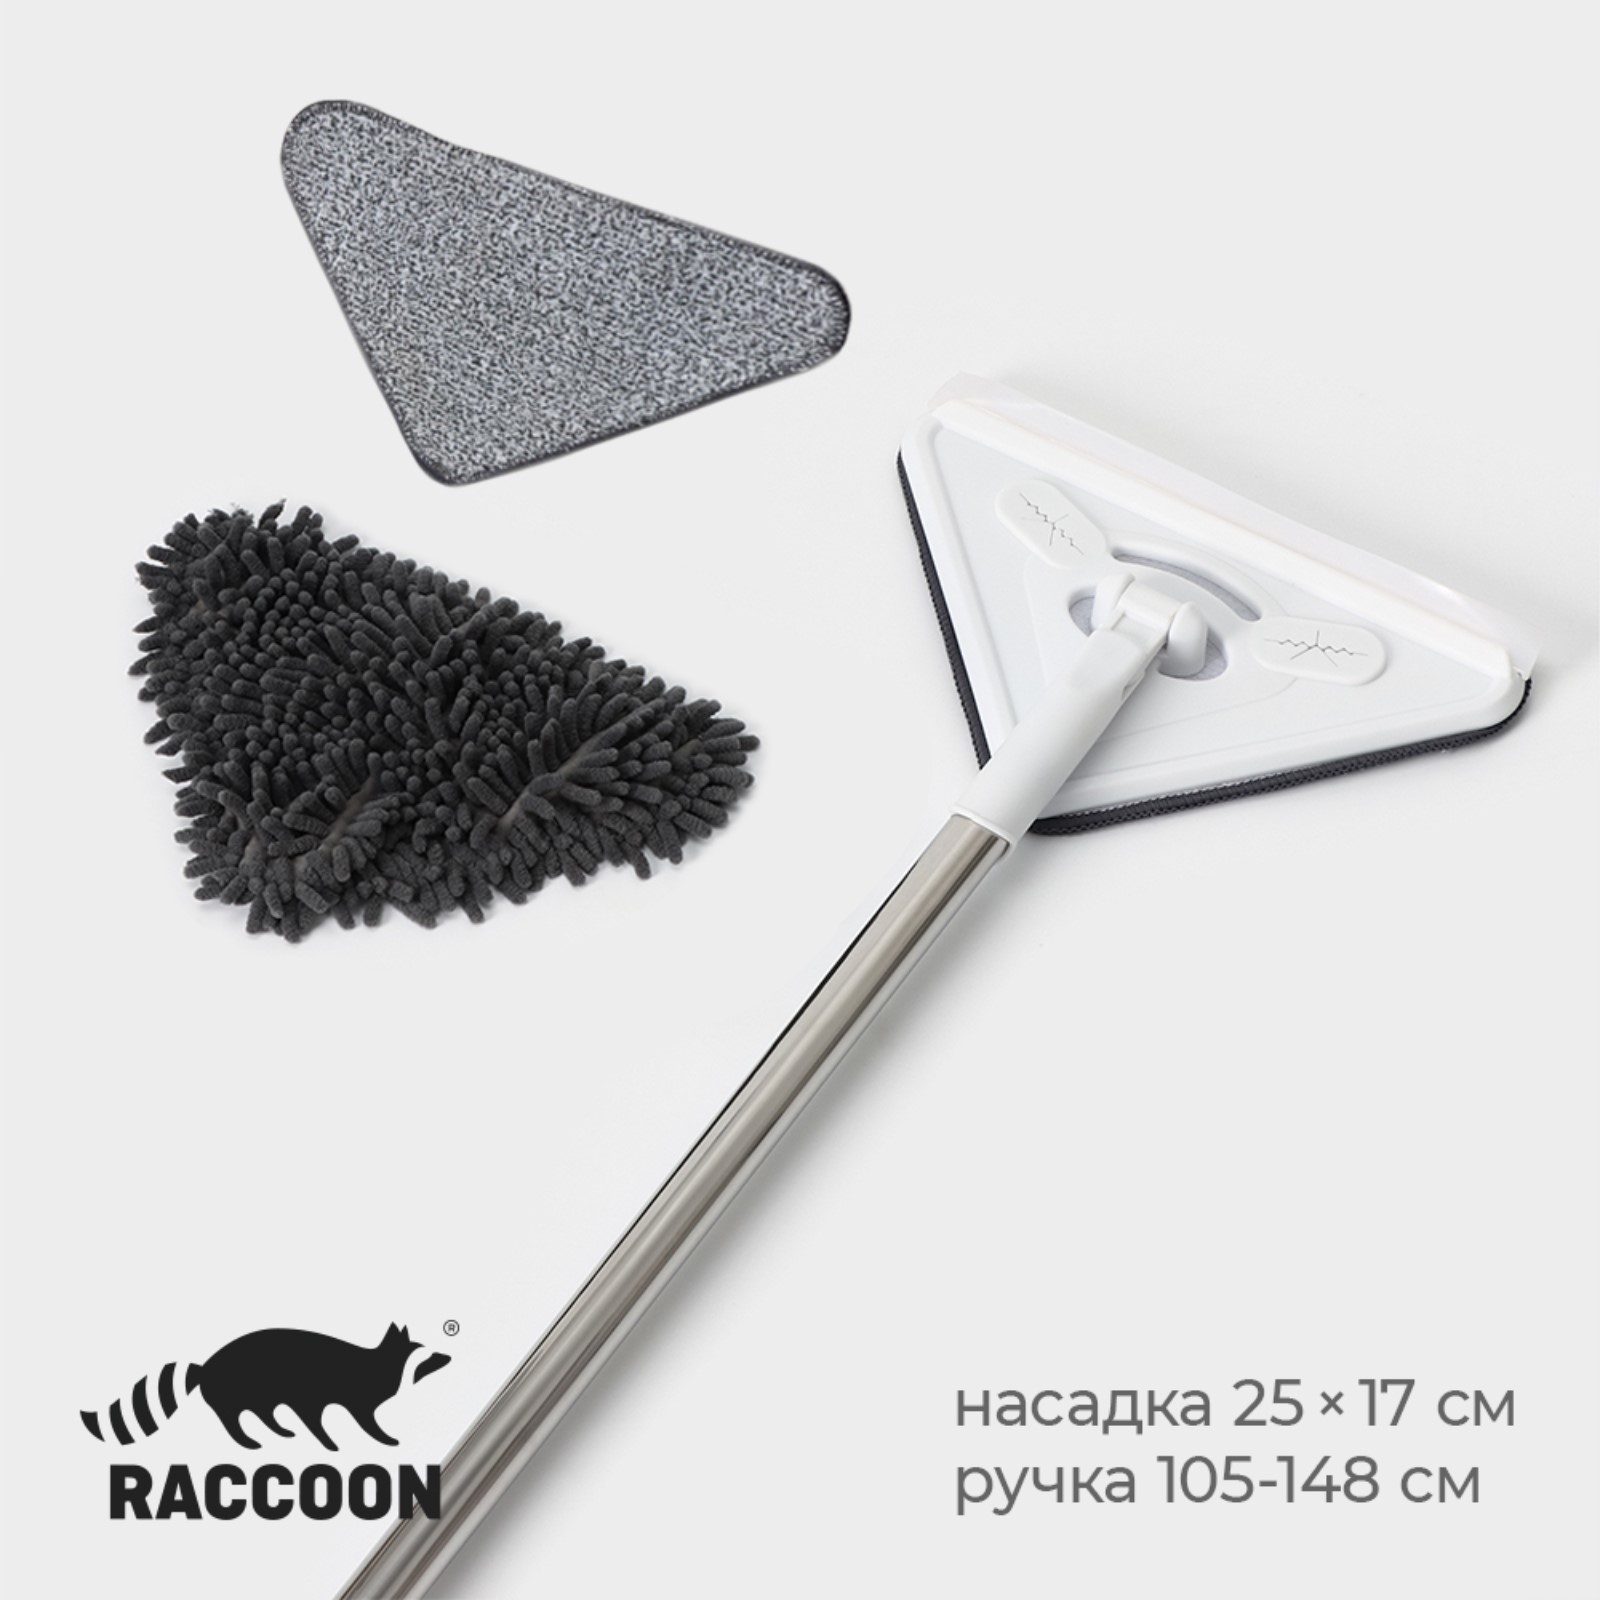  с телескопической стальной ручкой и сгоном Raccoon, 25×17×105 .